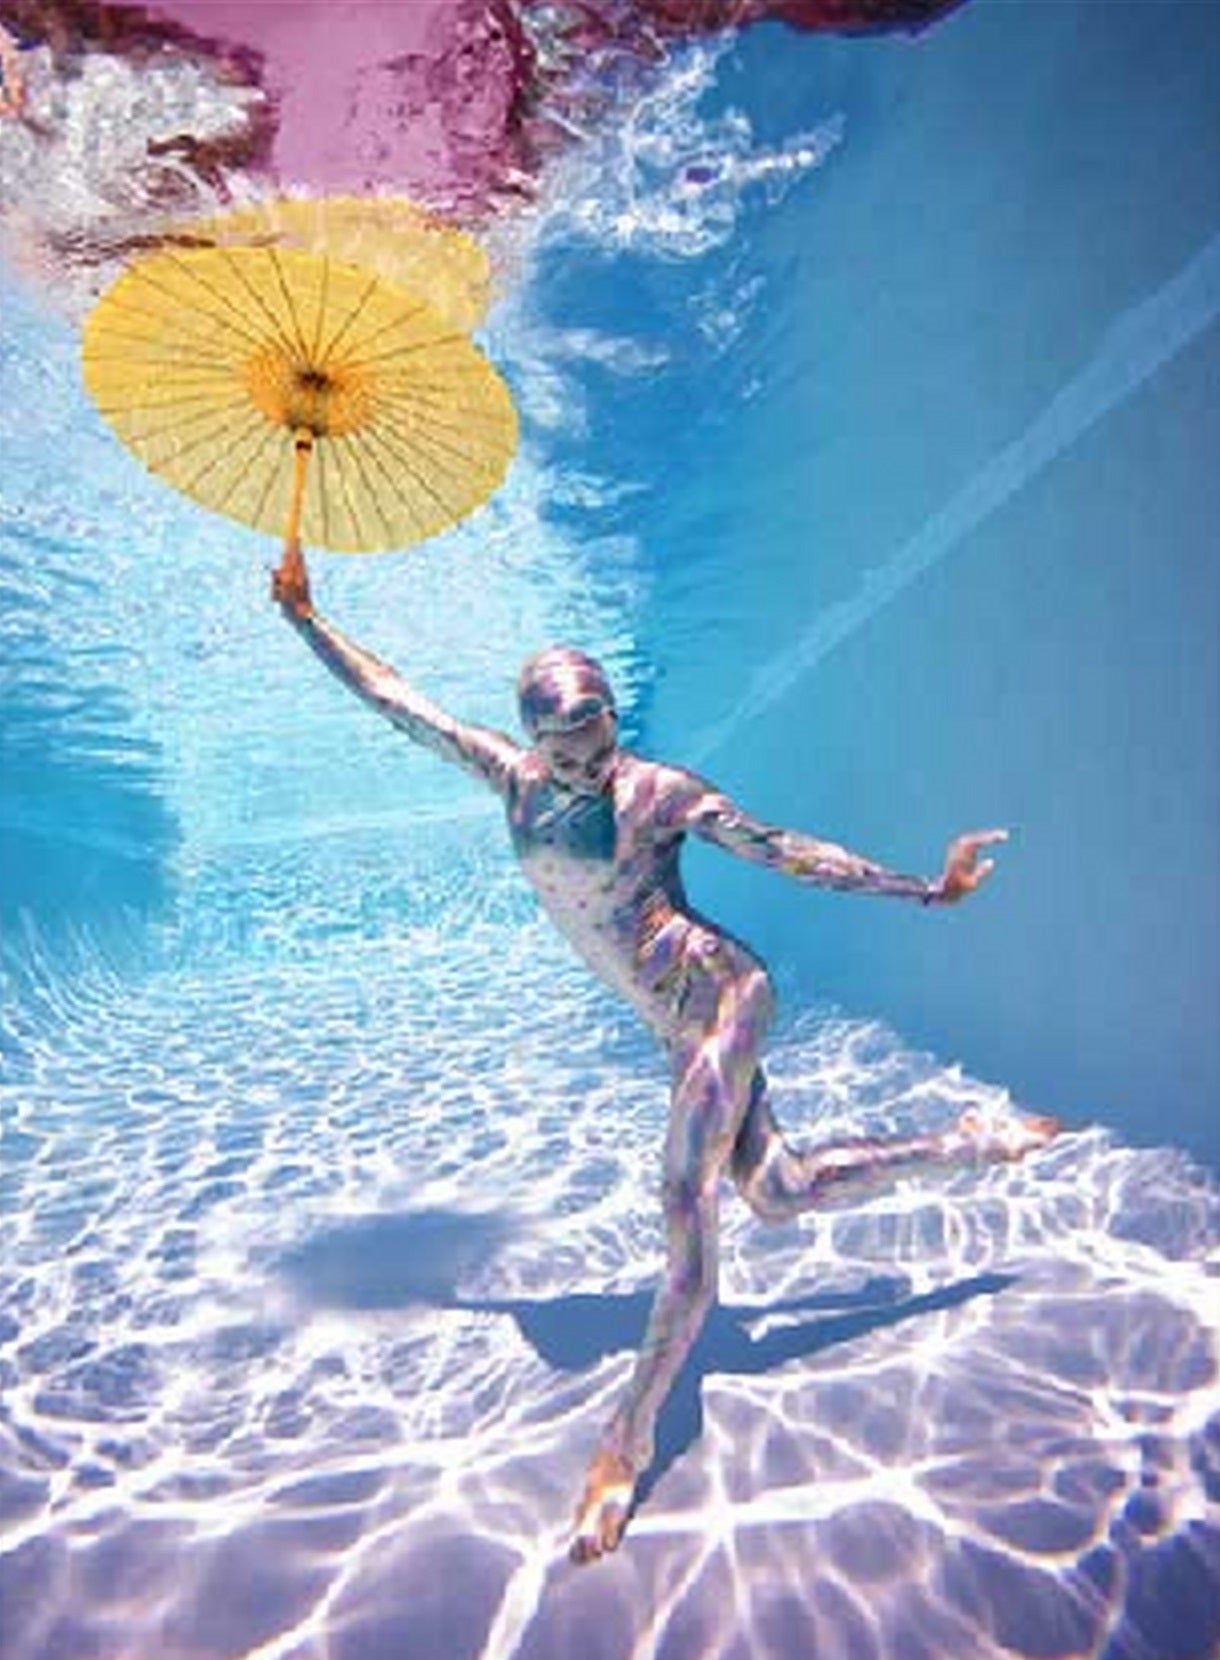 Howard Schatz Color Photograph - Underwater Study # 2778 - model posing underwater in bodysuit with umbrella